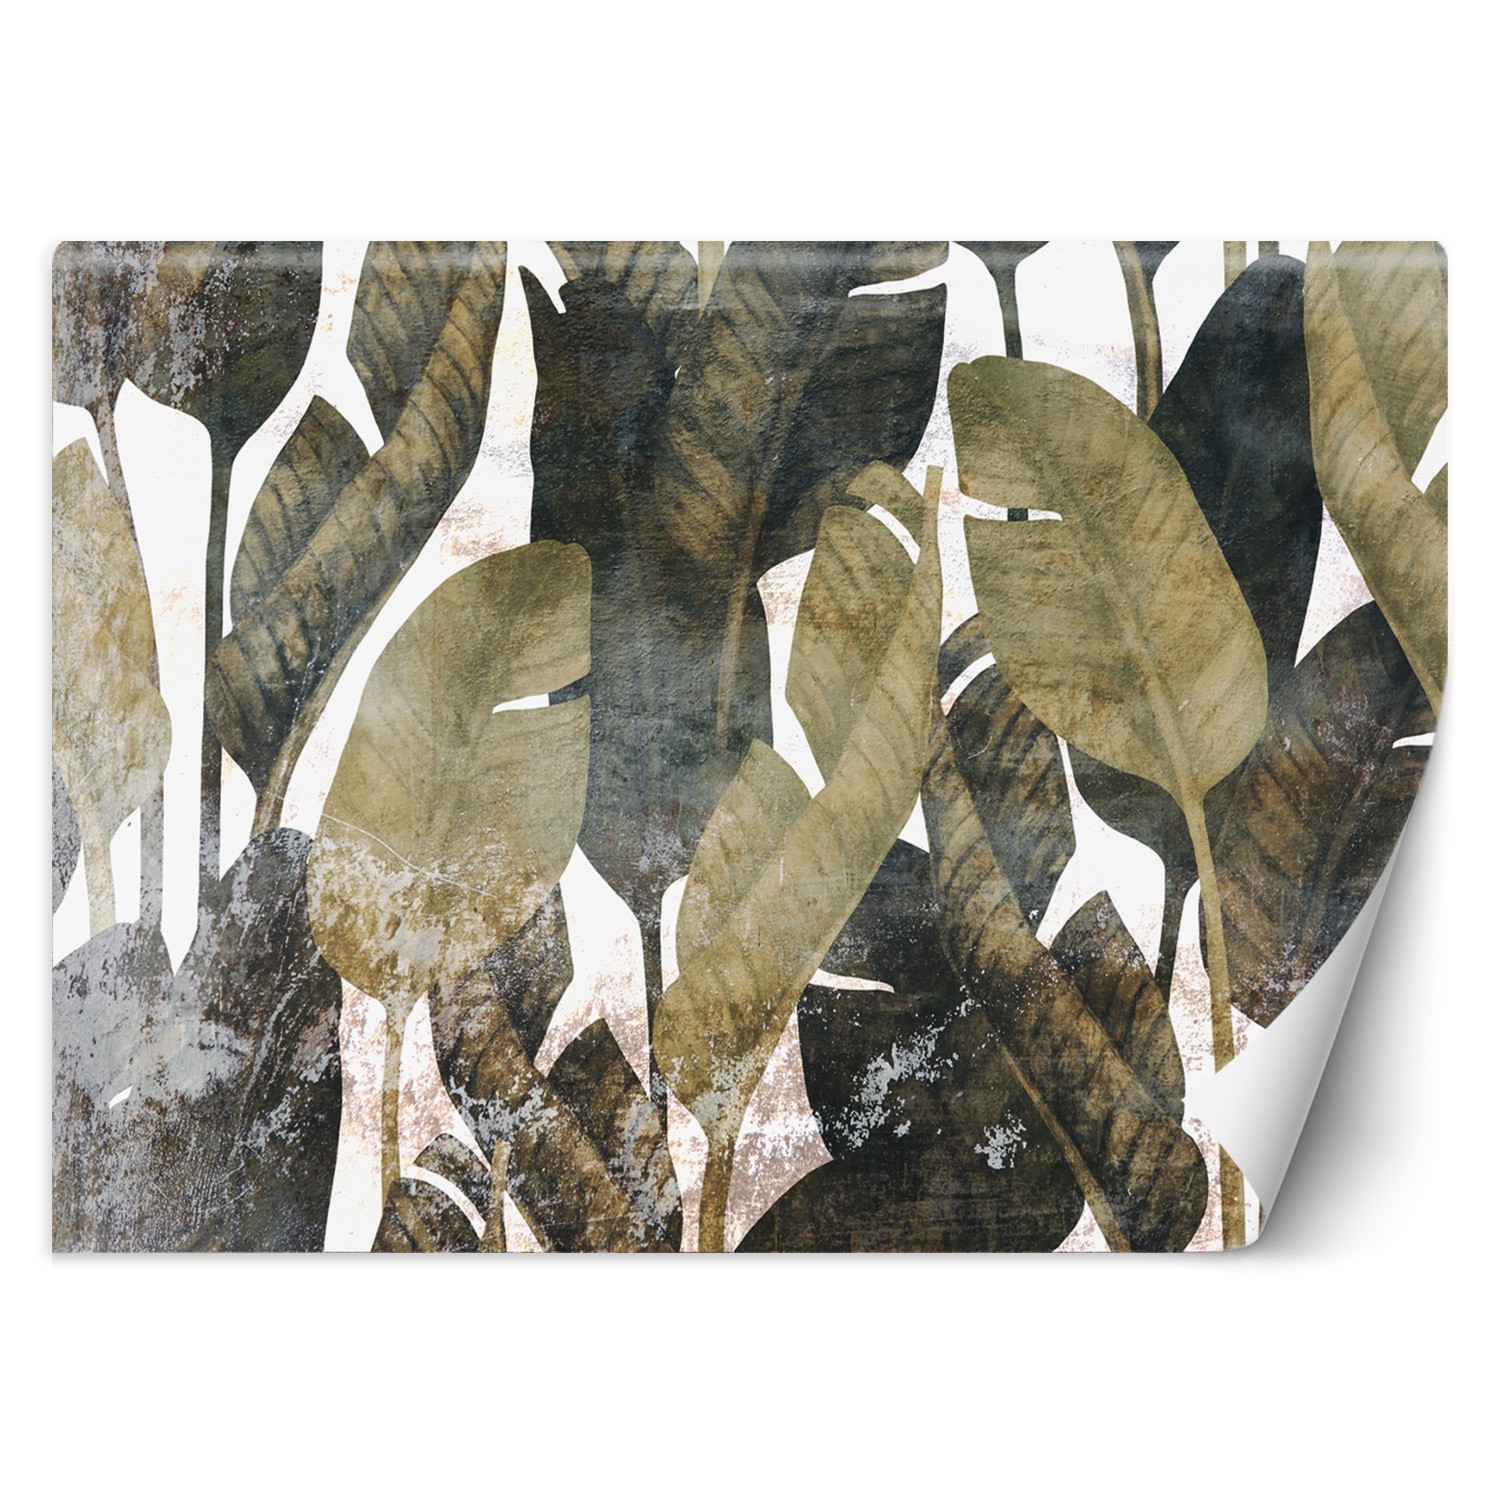 Trend24 – Behang – Bananenblaadjes – Vliesbehang – Fotobehang 3D – Behang Woonkamer – 450×315 cm – Incl. behanglijm